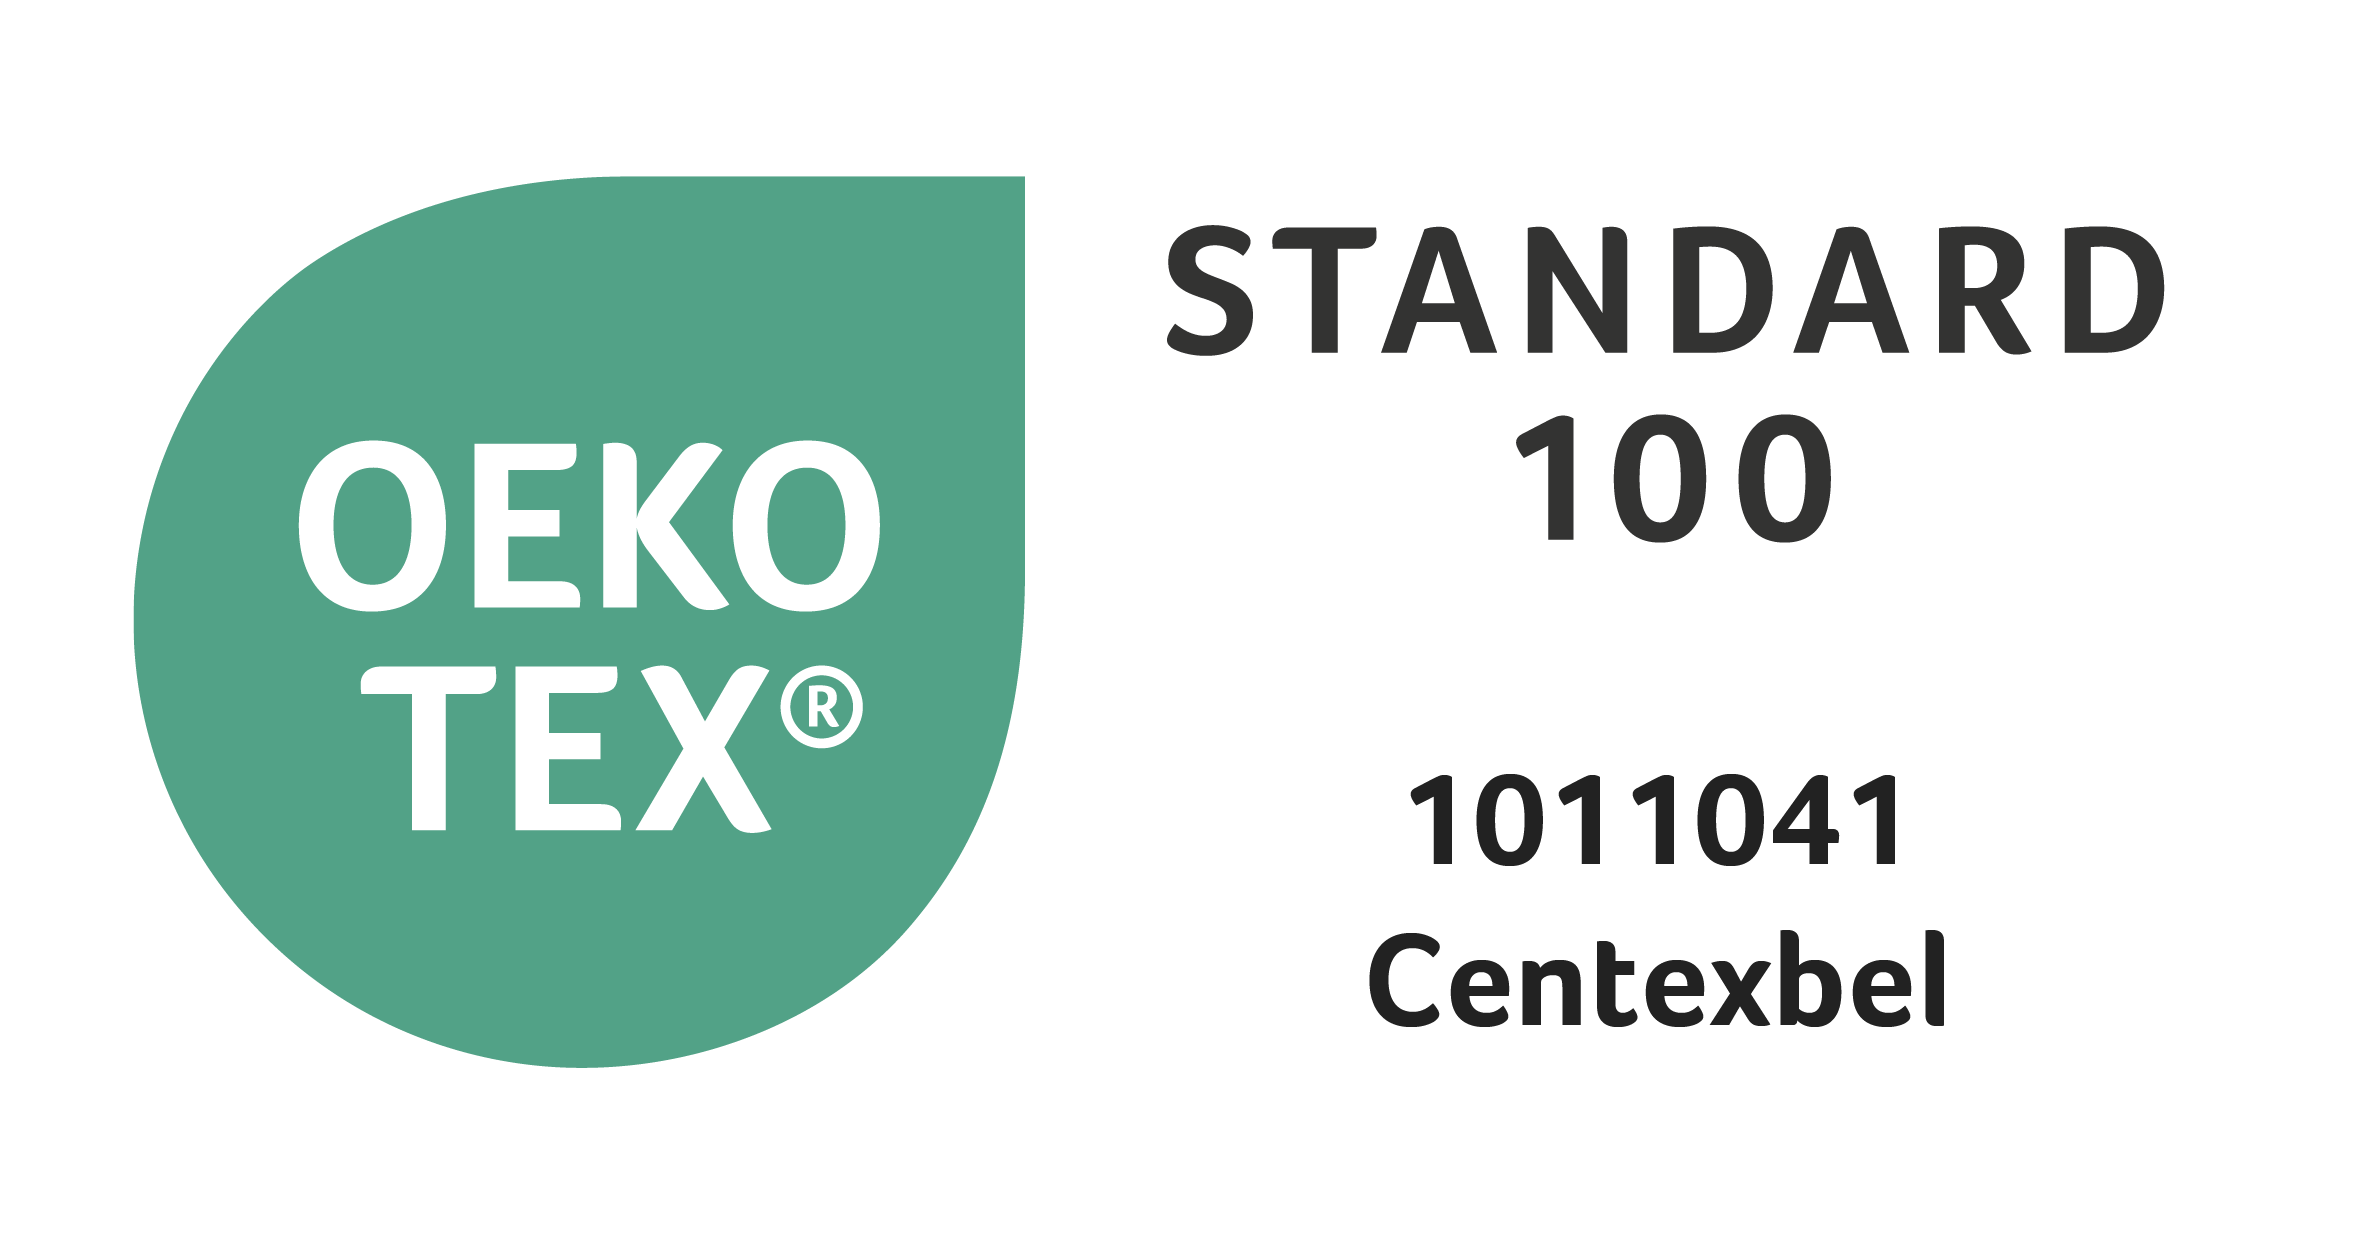 Geprüft auf Schadstoffe nach Oeko-Tex® Standard 100 (1011041/Centexbel) / Gewebe